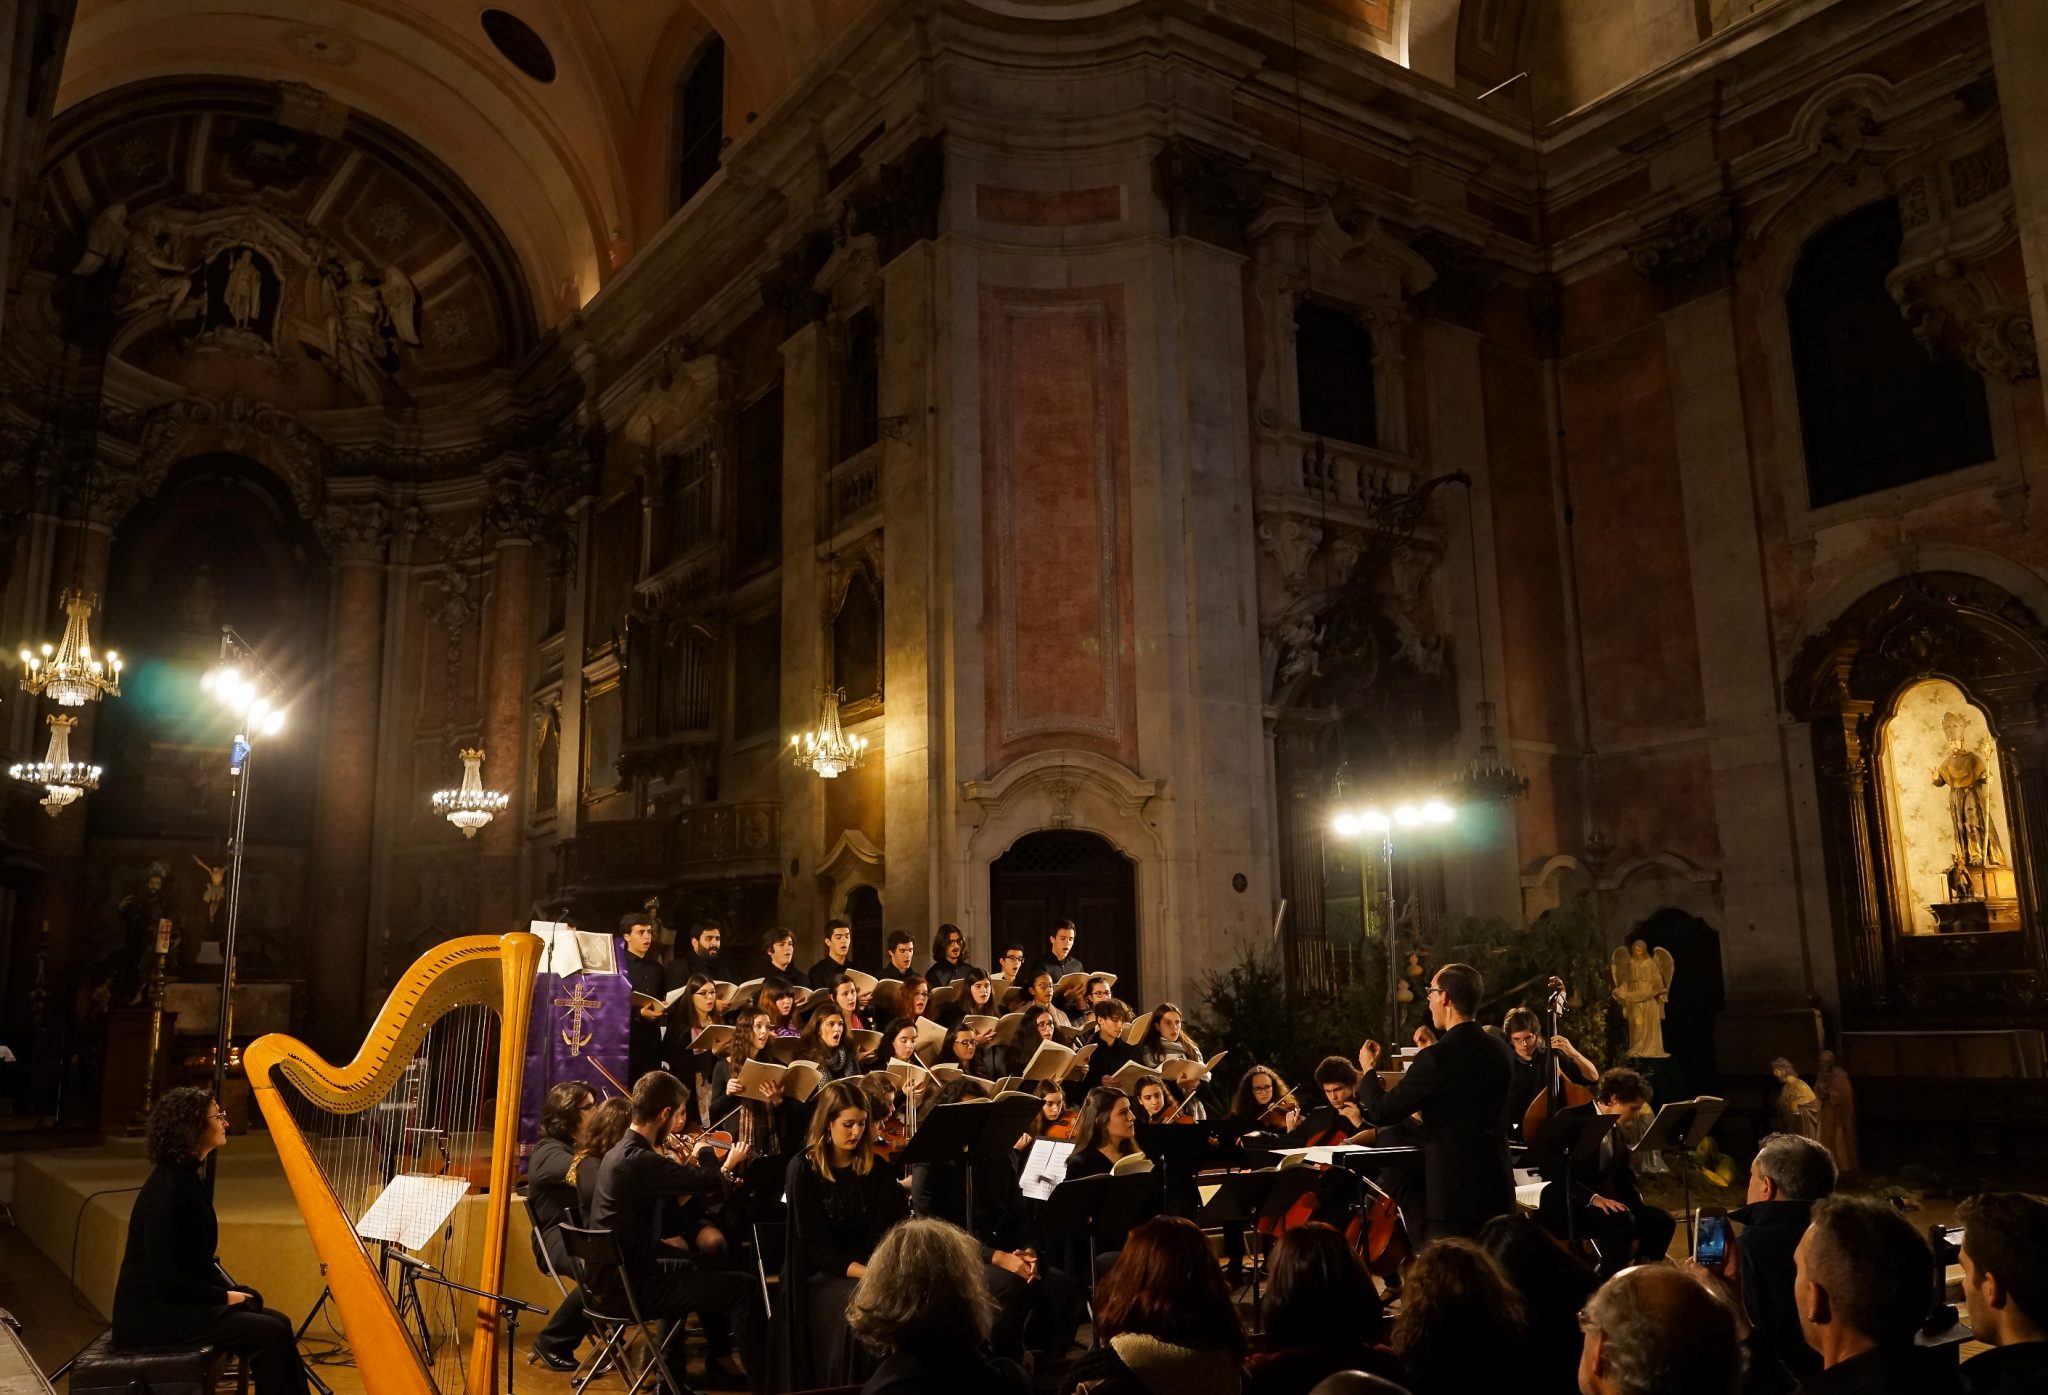 No cenário de uma igreja, um concerto que inclui uma harpa, instrumentos de corda e um coro